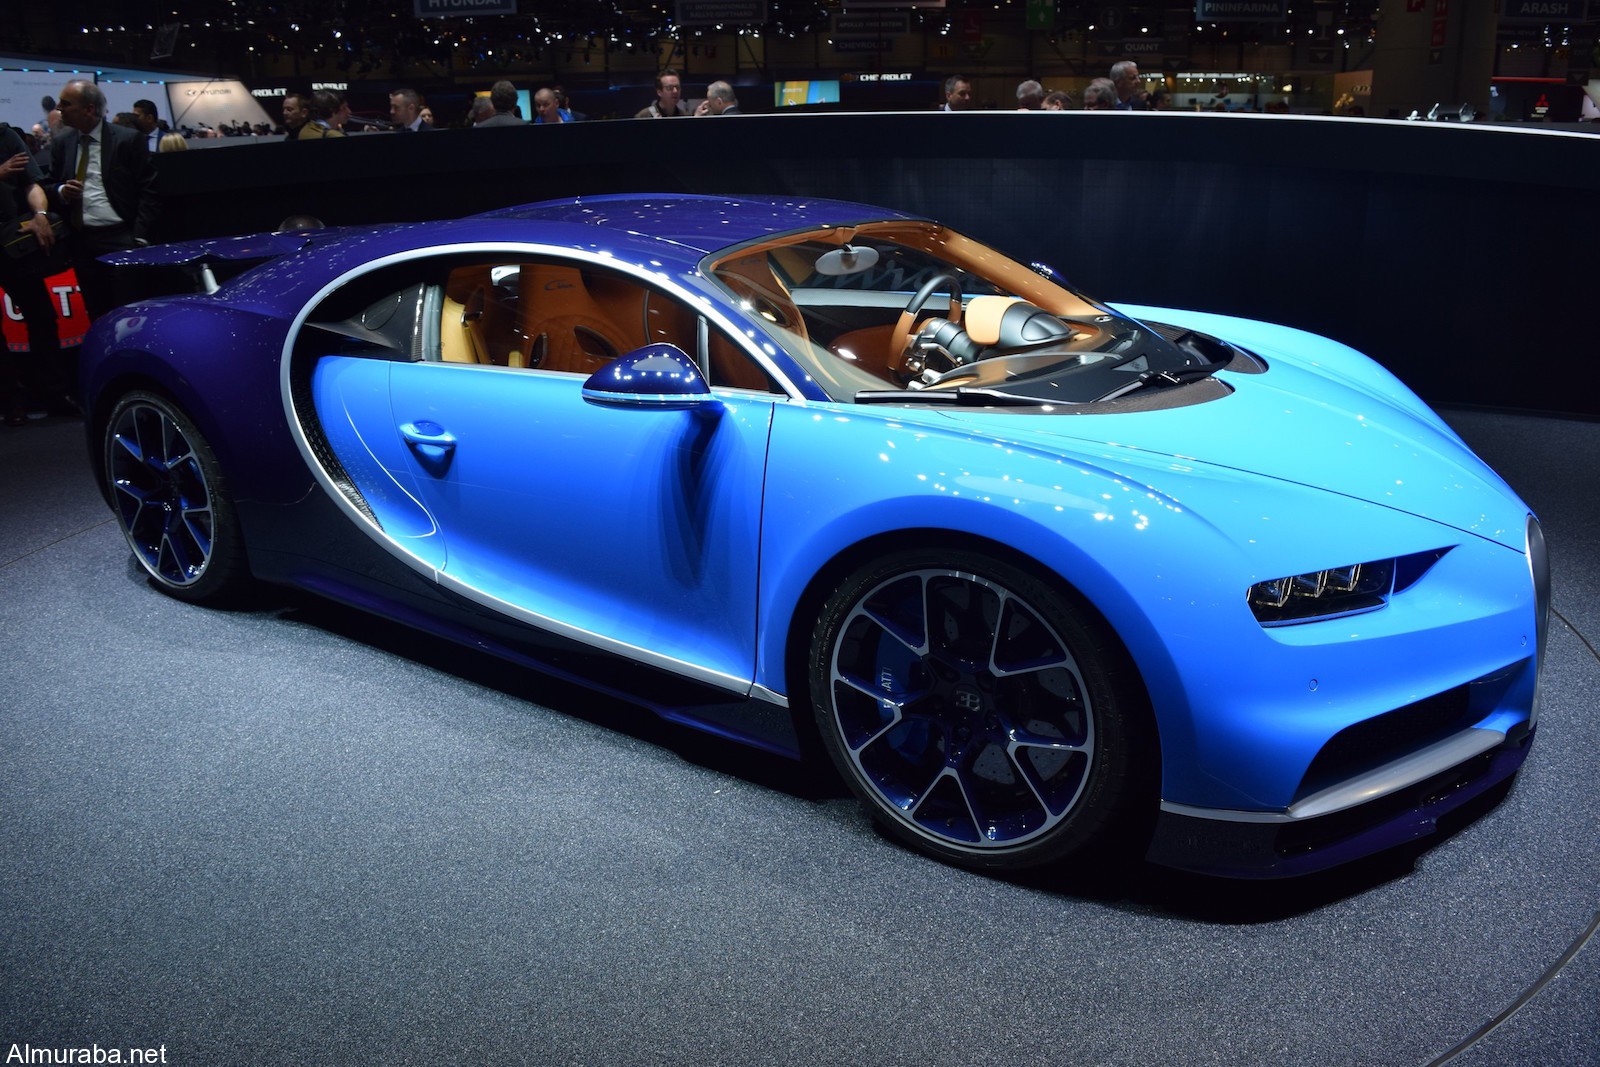 "كوينجسيج" ريجيرا أم "بوجاتي" تشيرون؛ أيّ الخارقتان ذوات محركات الـ1,500 حصان تفضلون؟ Koenigsegg Vs Bugatti 10